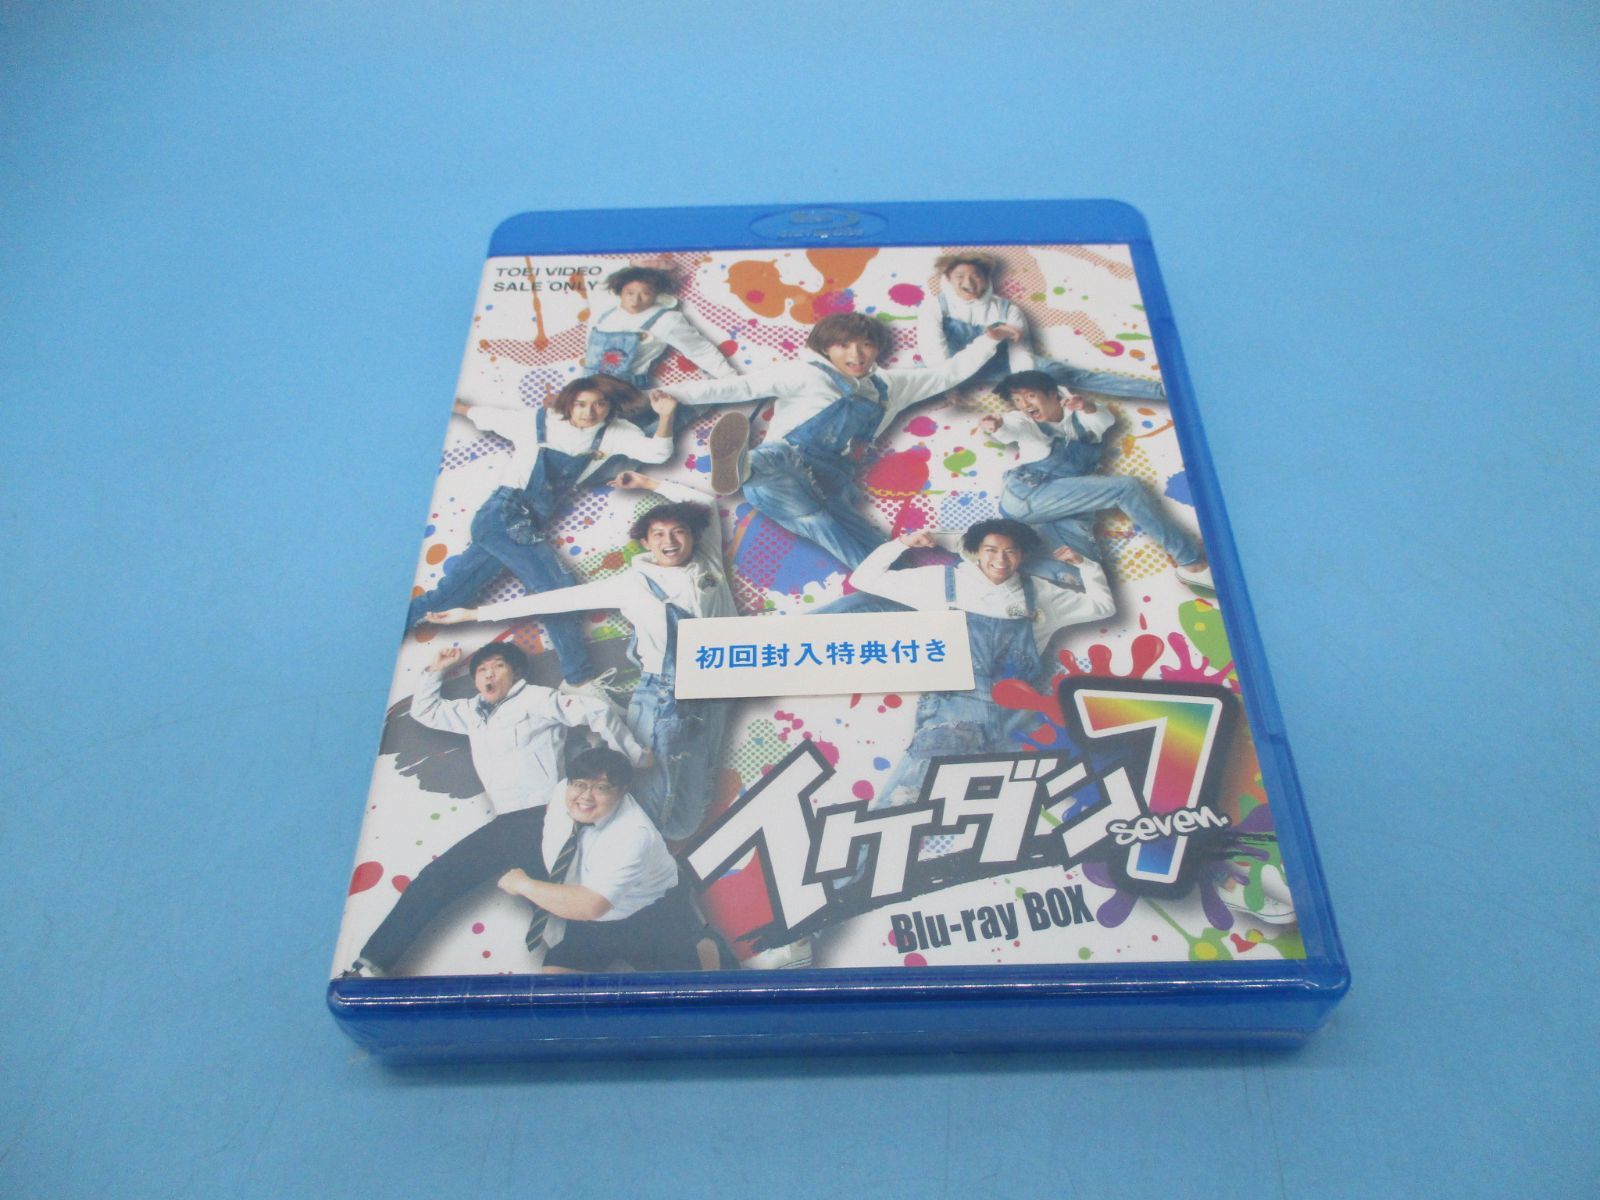 イケダン7 Blu-ray BOX〈5枚組〉 - お笑い/バラエティ